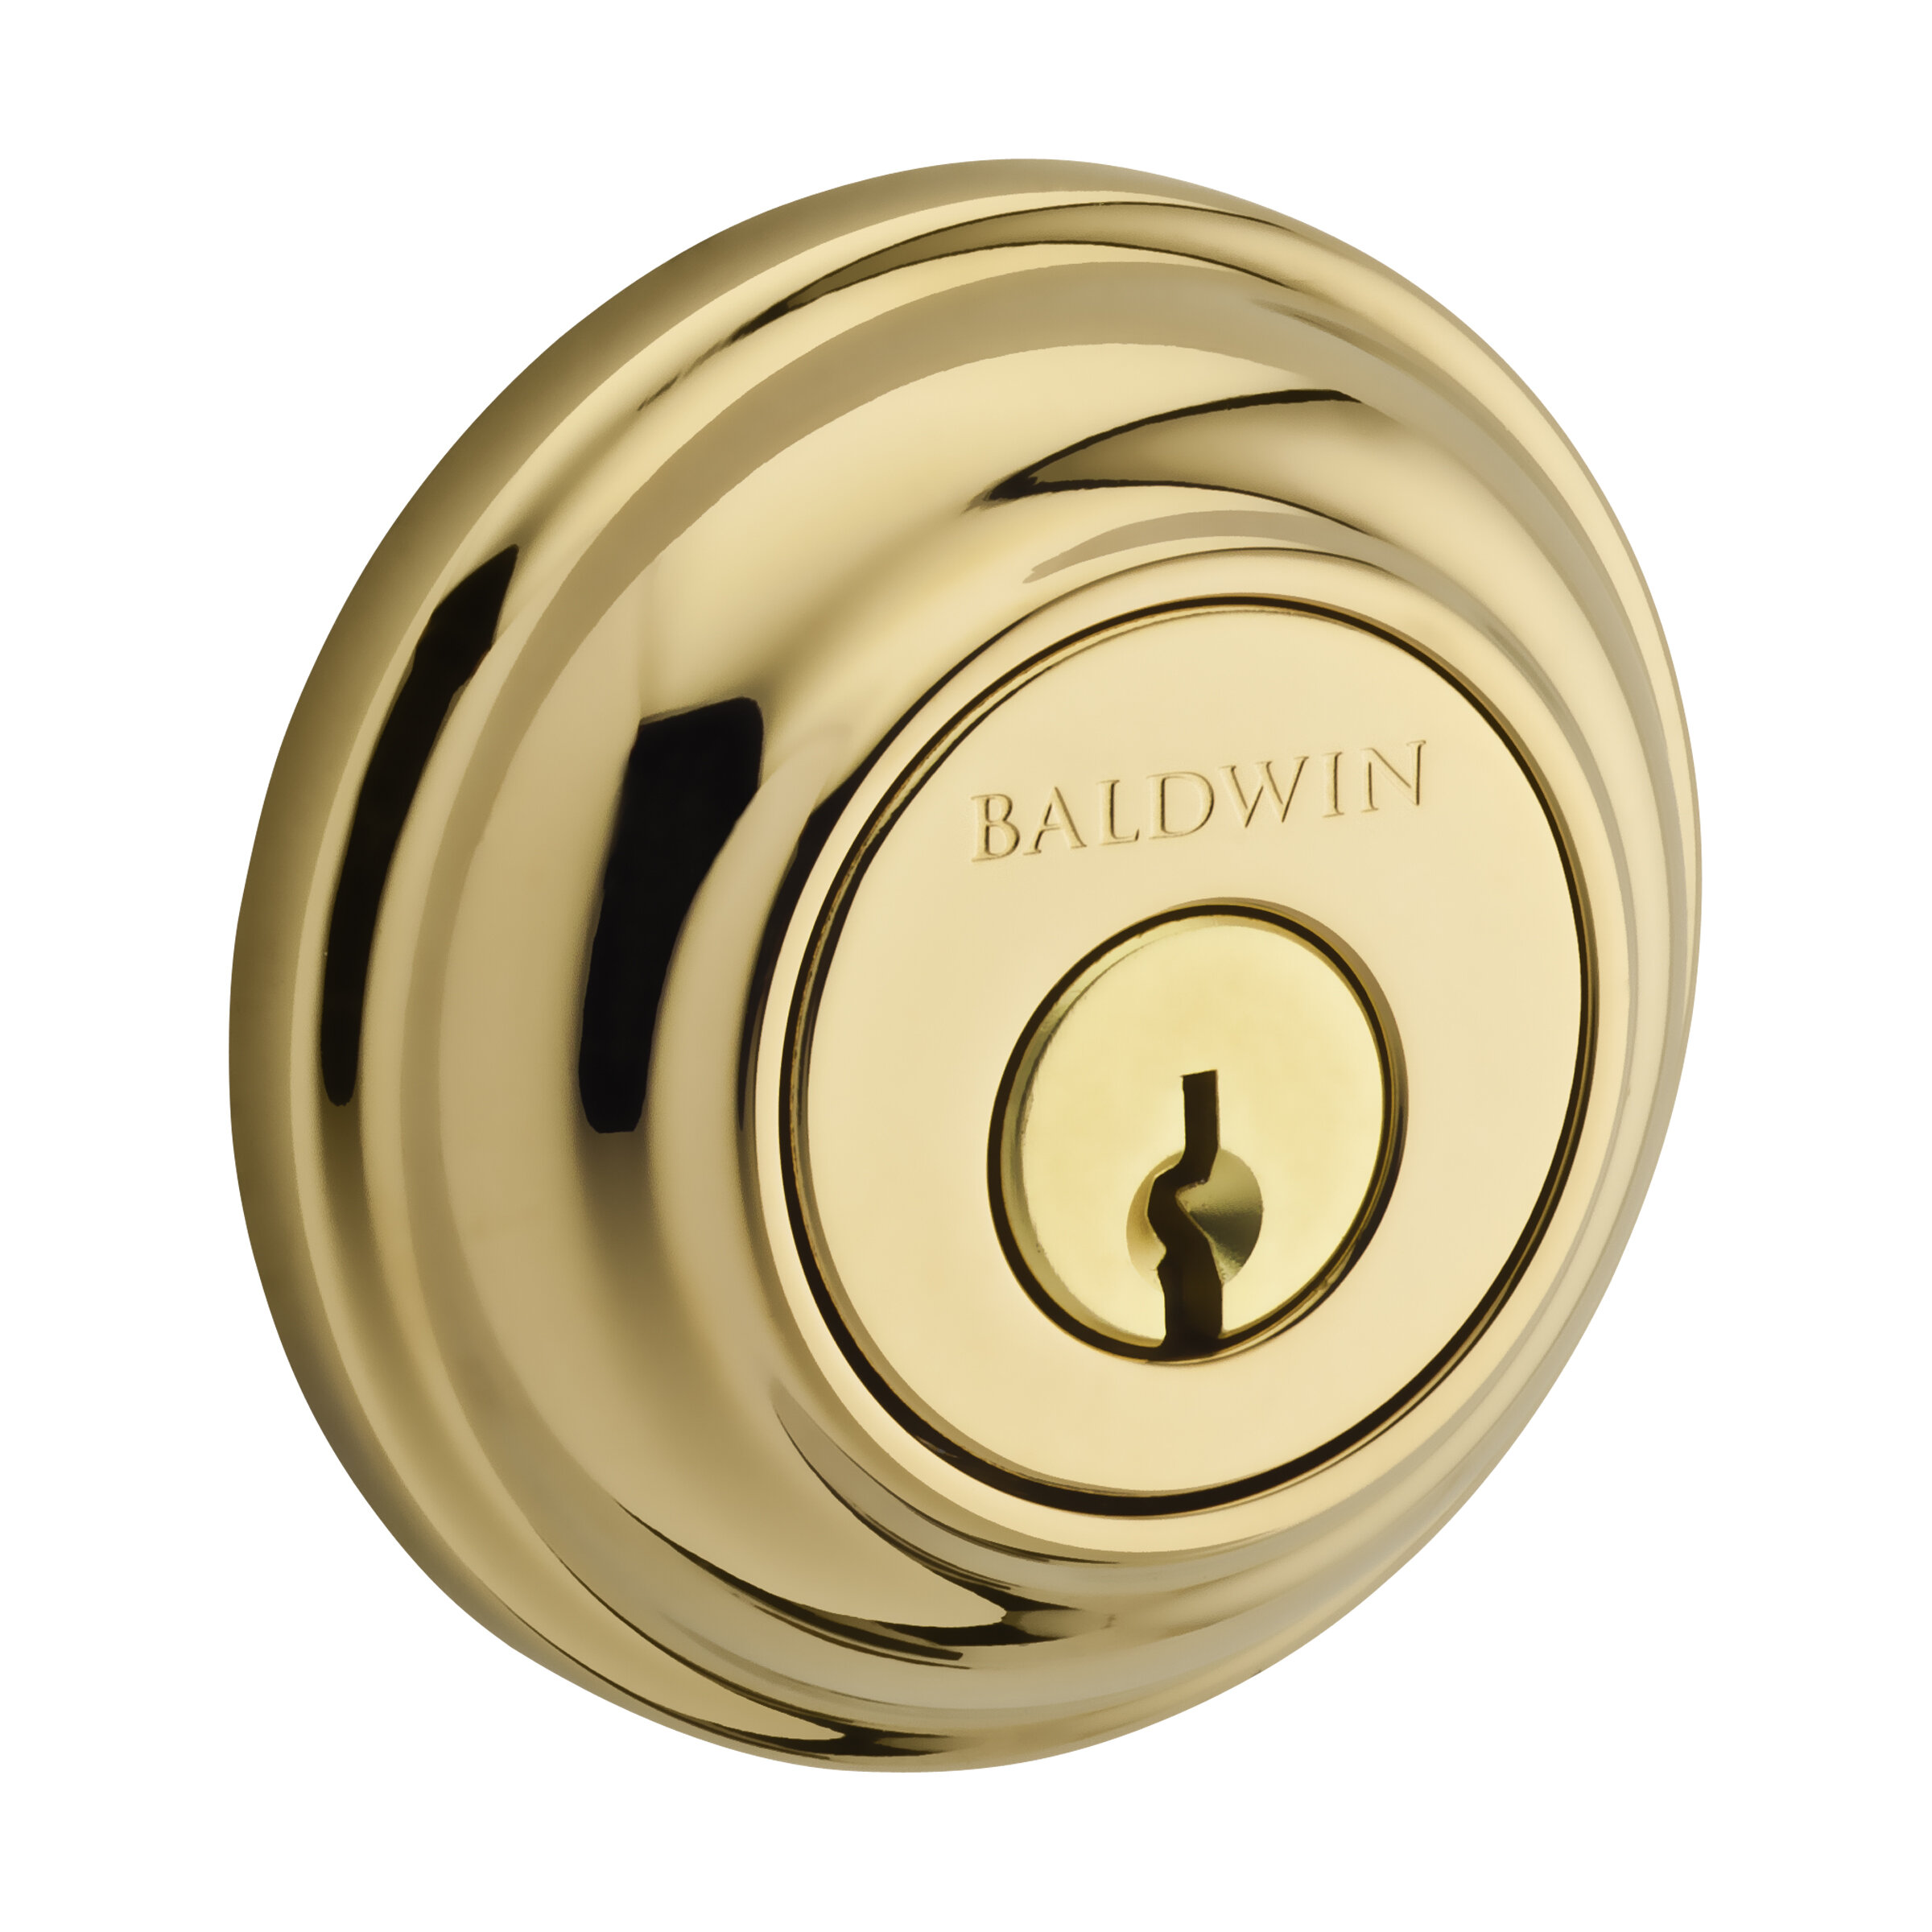 Baldwin Mortise Lock Installation Instructions, PDF, Door